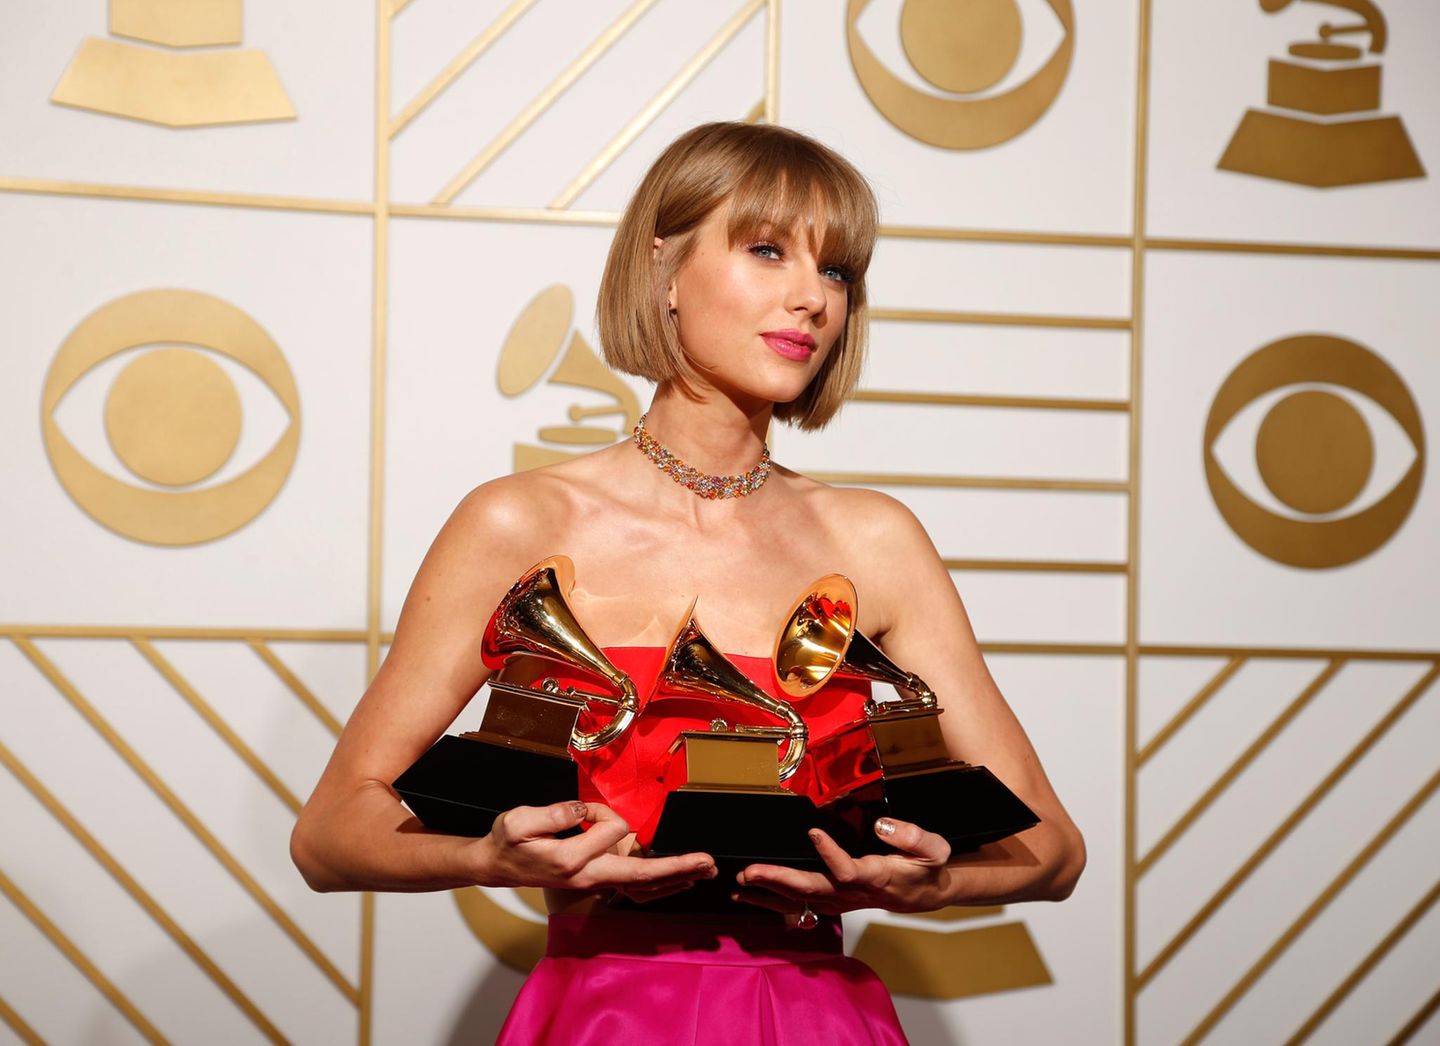 Taylor Swift ist die Gewinnerin des Abends. Sie räumt bei den 58. Grammy Awards in den Kategorien Album des Jahres, Bestes Pop-Gesangsalbum und Bestes Musikvideo ab.